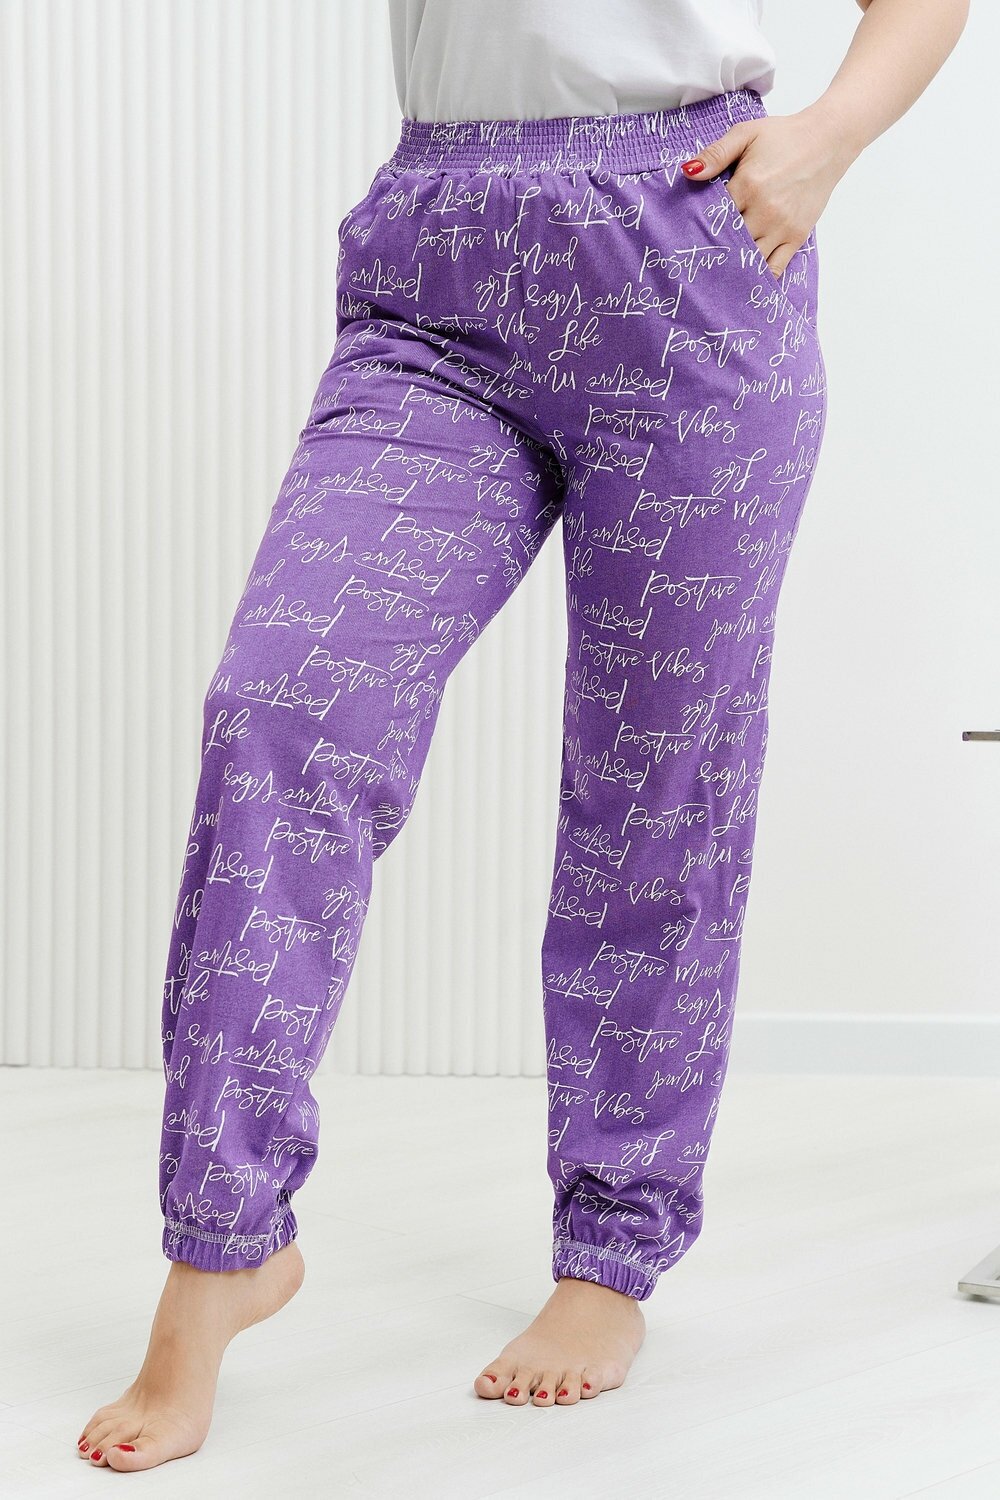 Брюки Натали, без рукава, пояс на резинке, карманы, размер 54, фиолетовый - фотография № 18